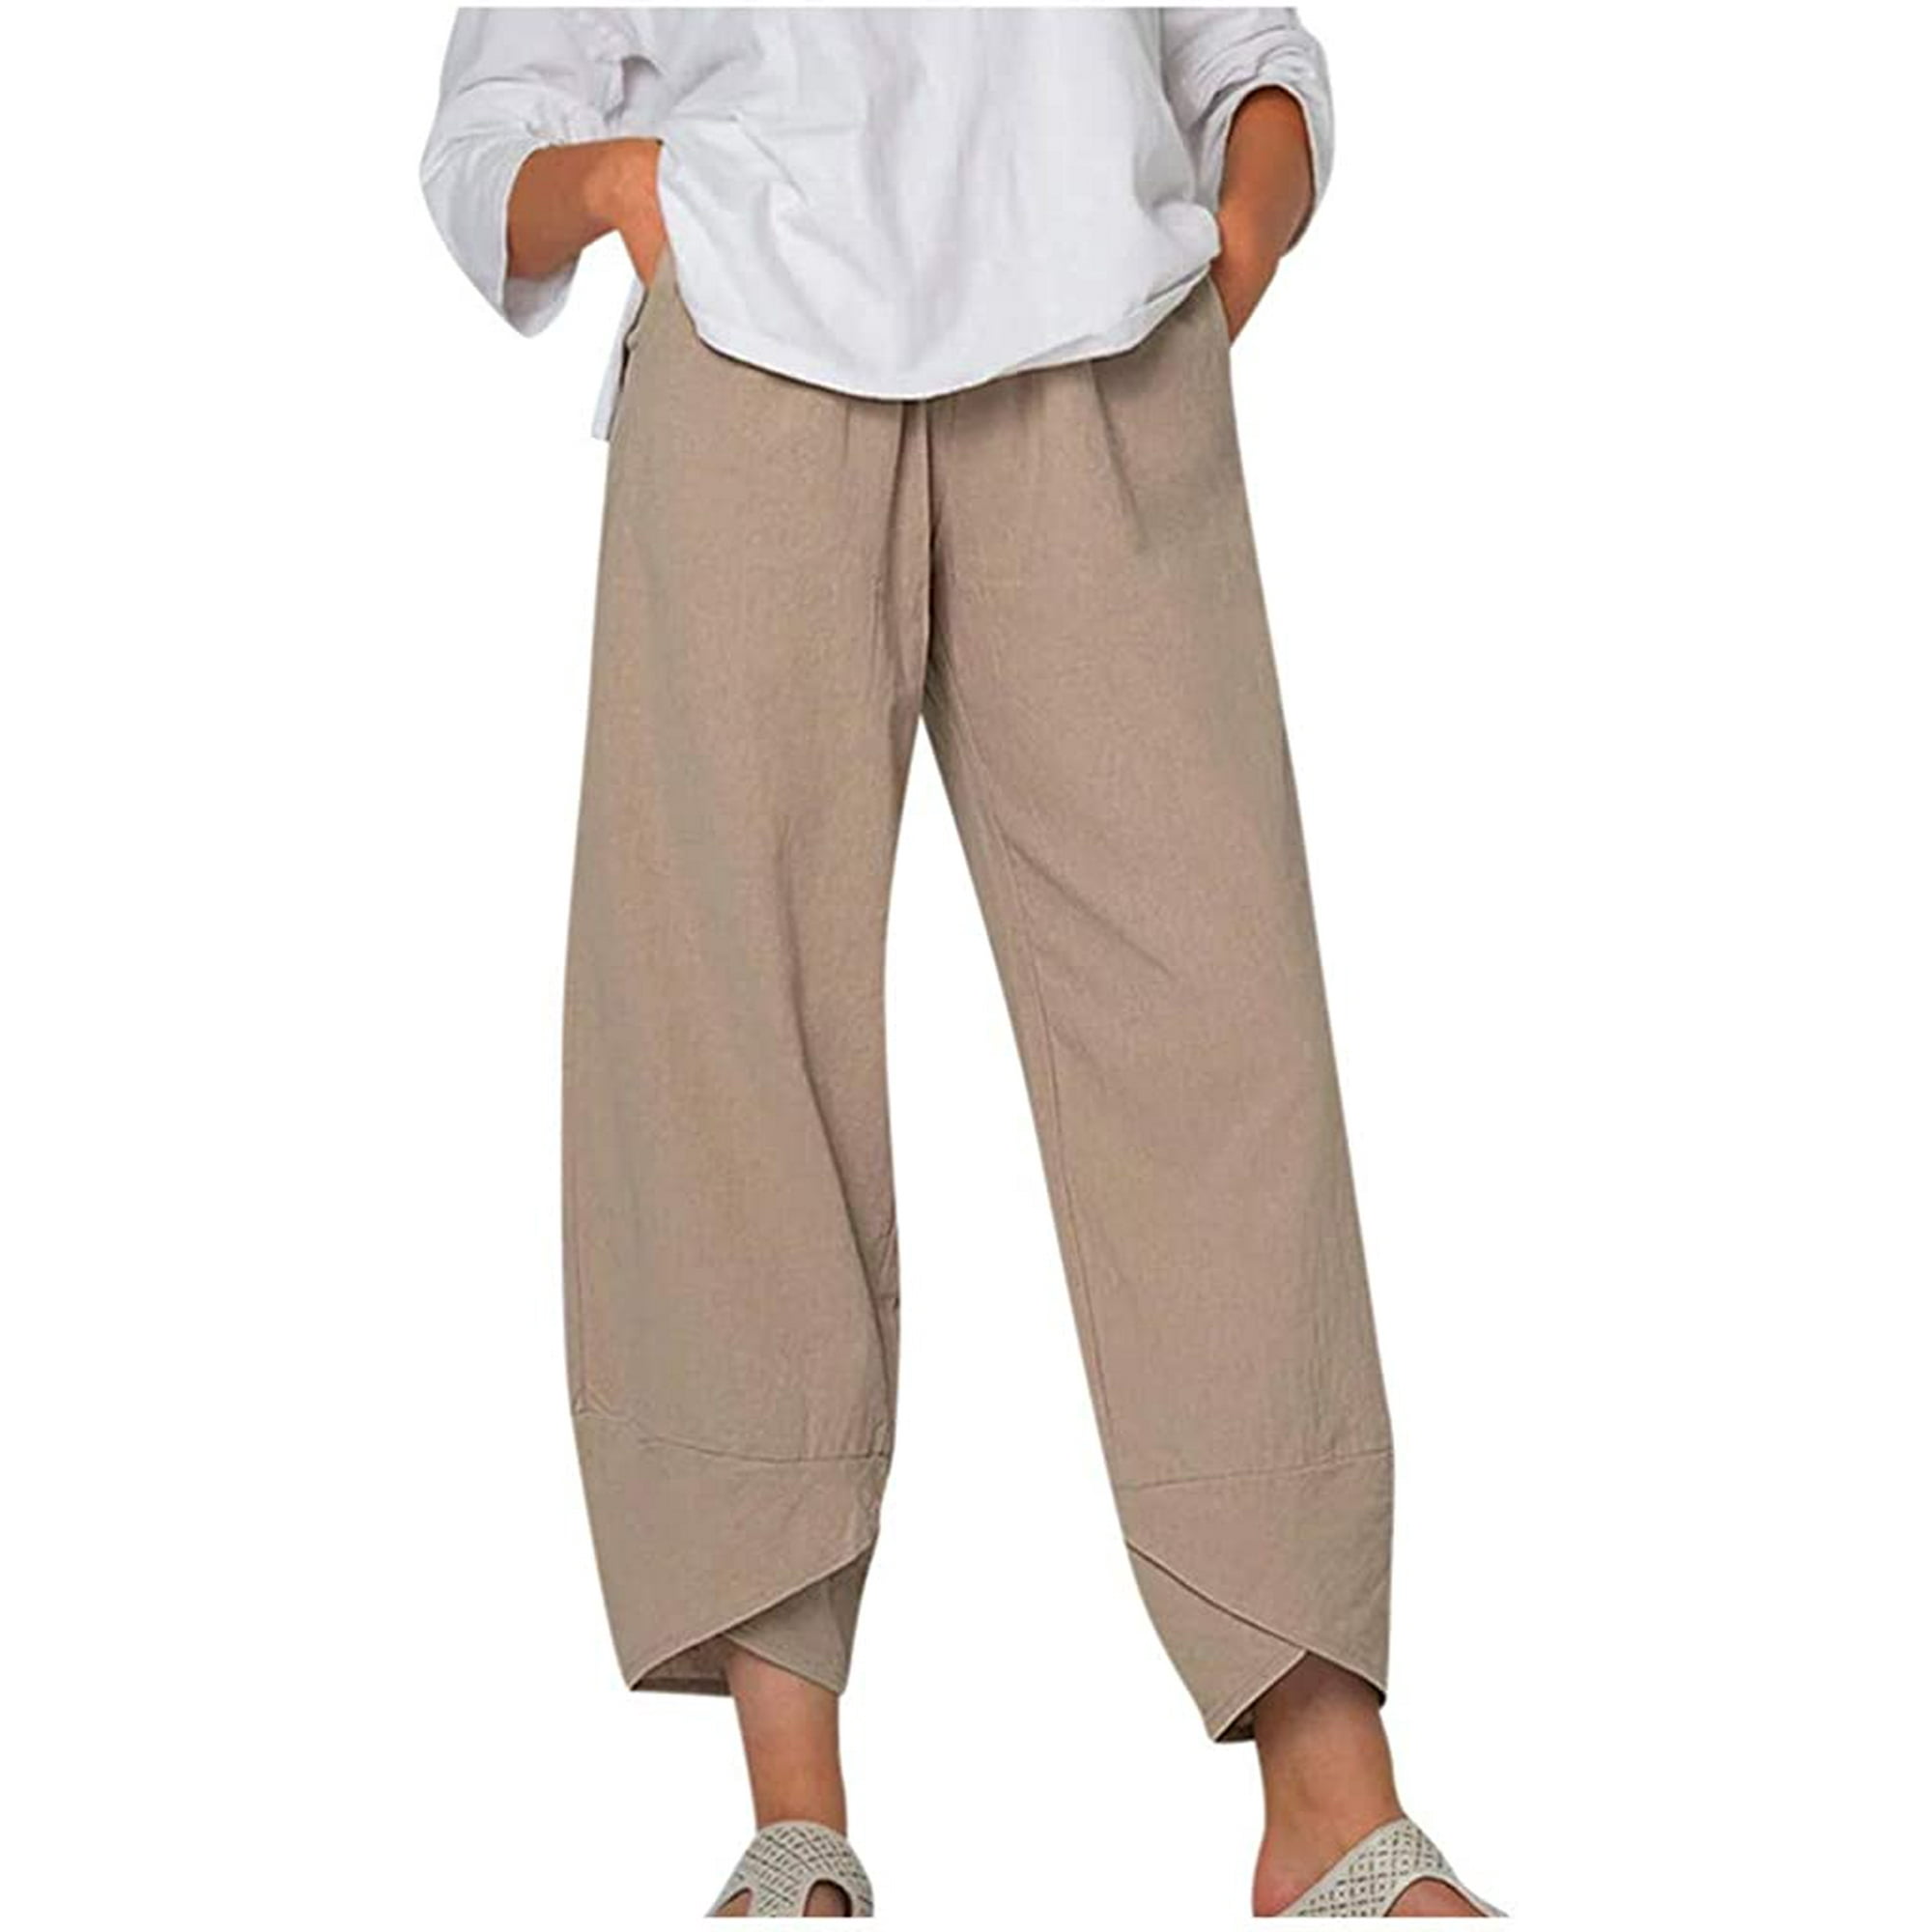 Domple Womens Plus Size Loose Fit Casual Cotton Linen Solid Harem Jogger Pants 